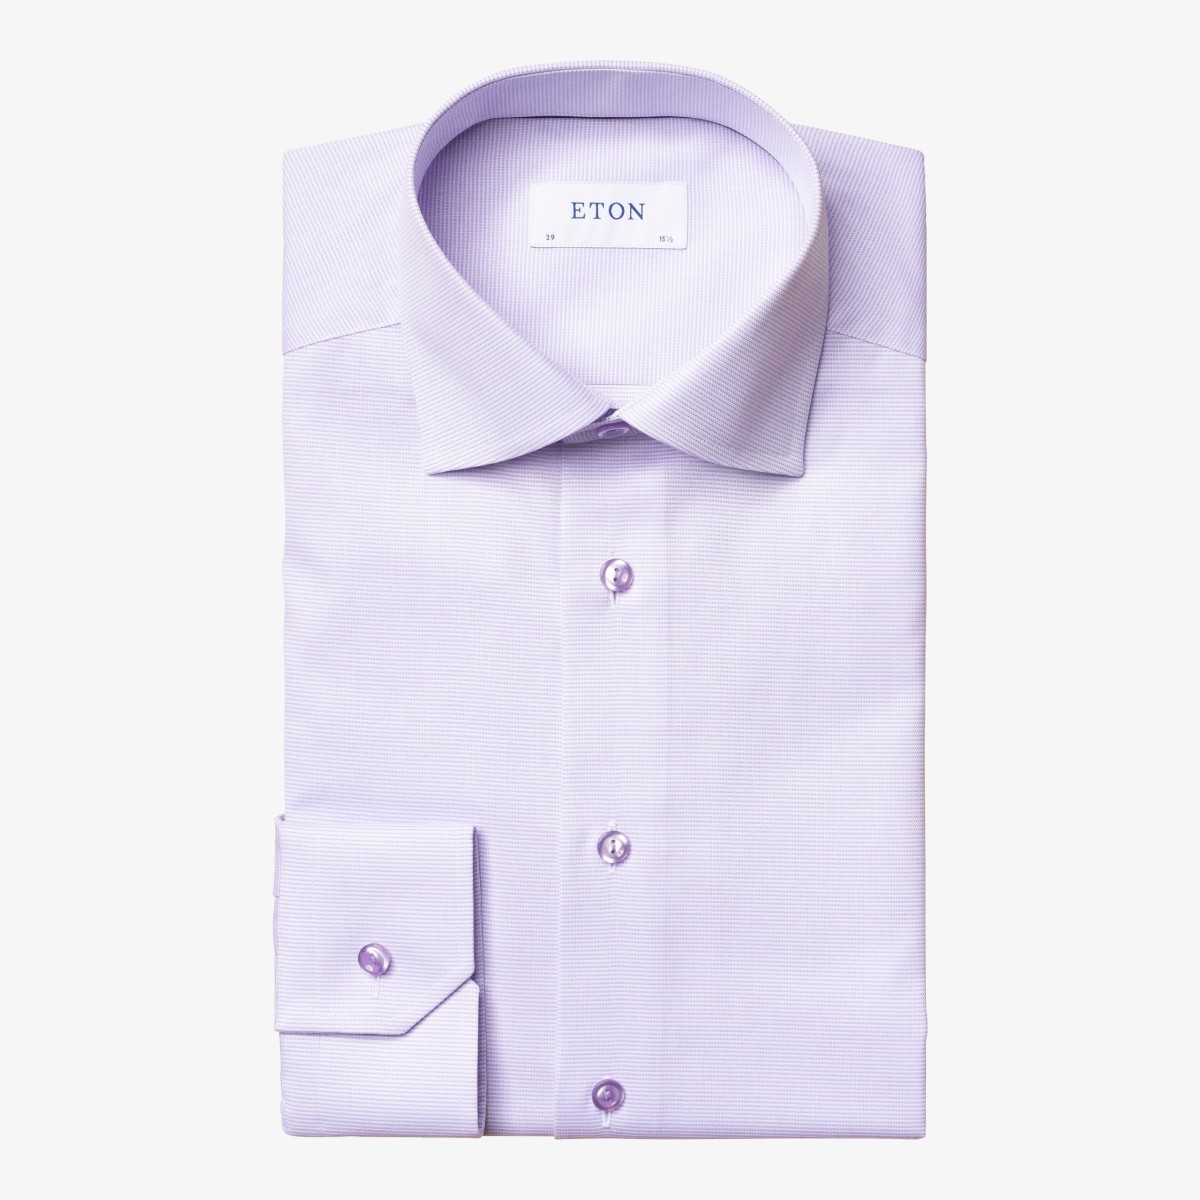 Eton violetiniai slim fit tvilo marškiniai su mikro raštu